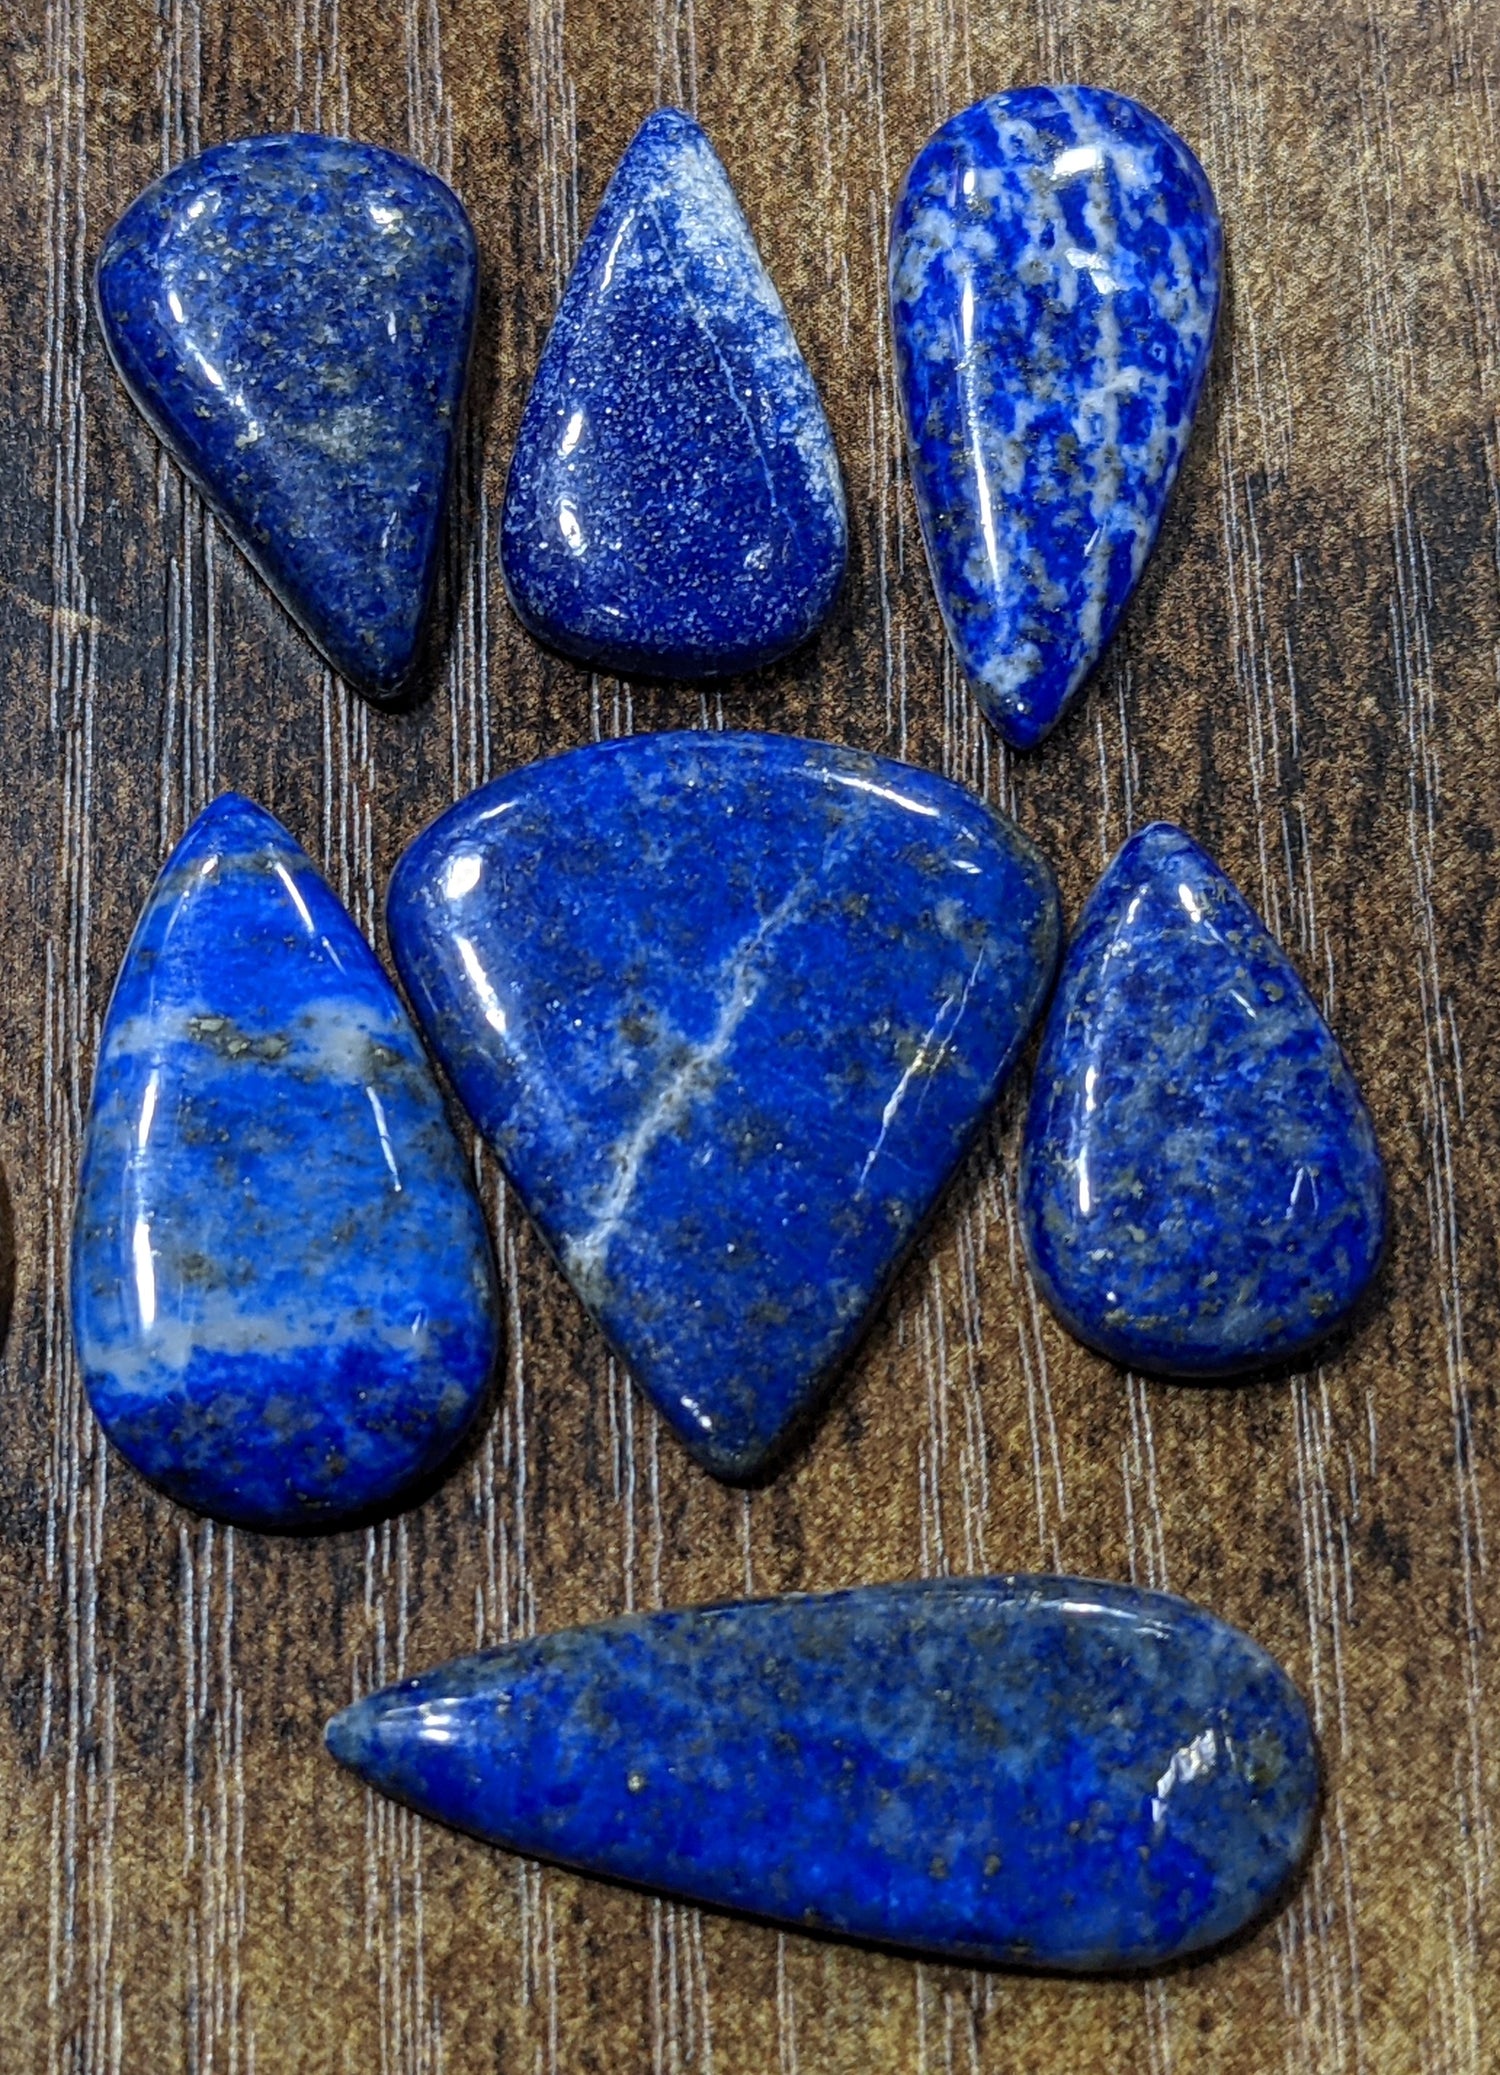 Jewelry-Grade-Lapis-Lazuli-Cabochon-3